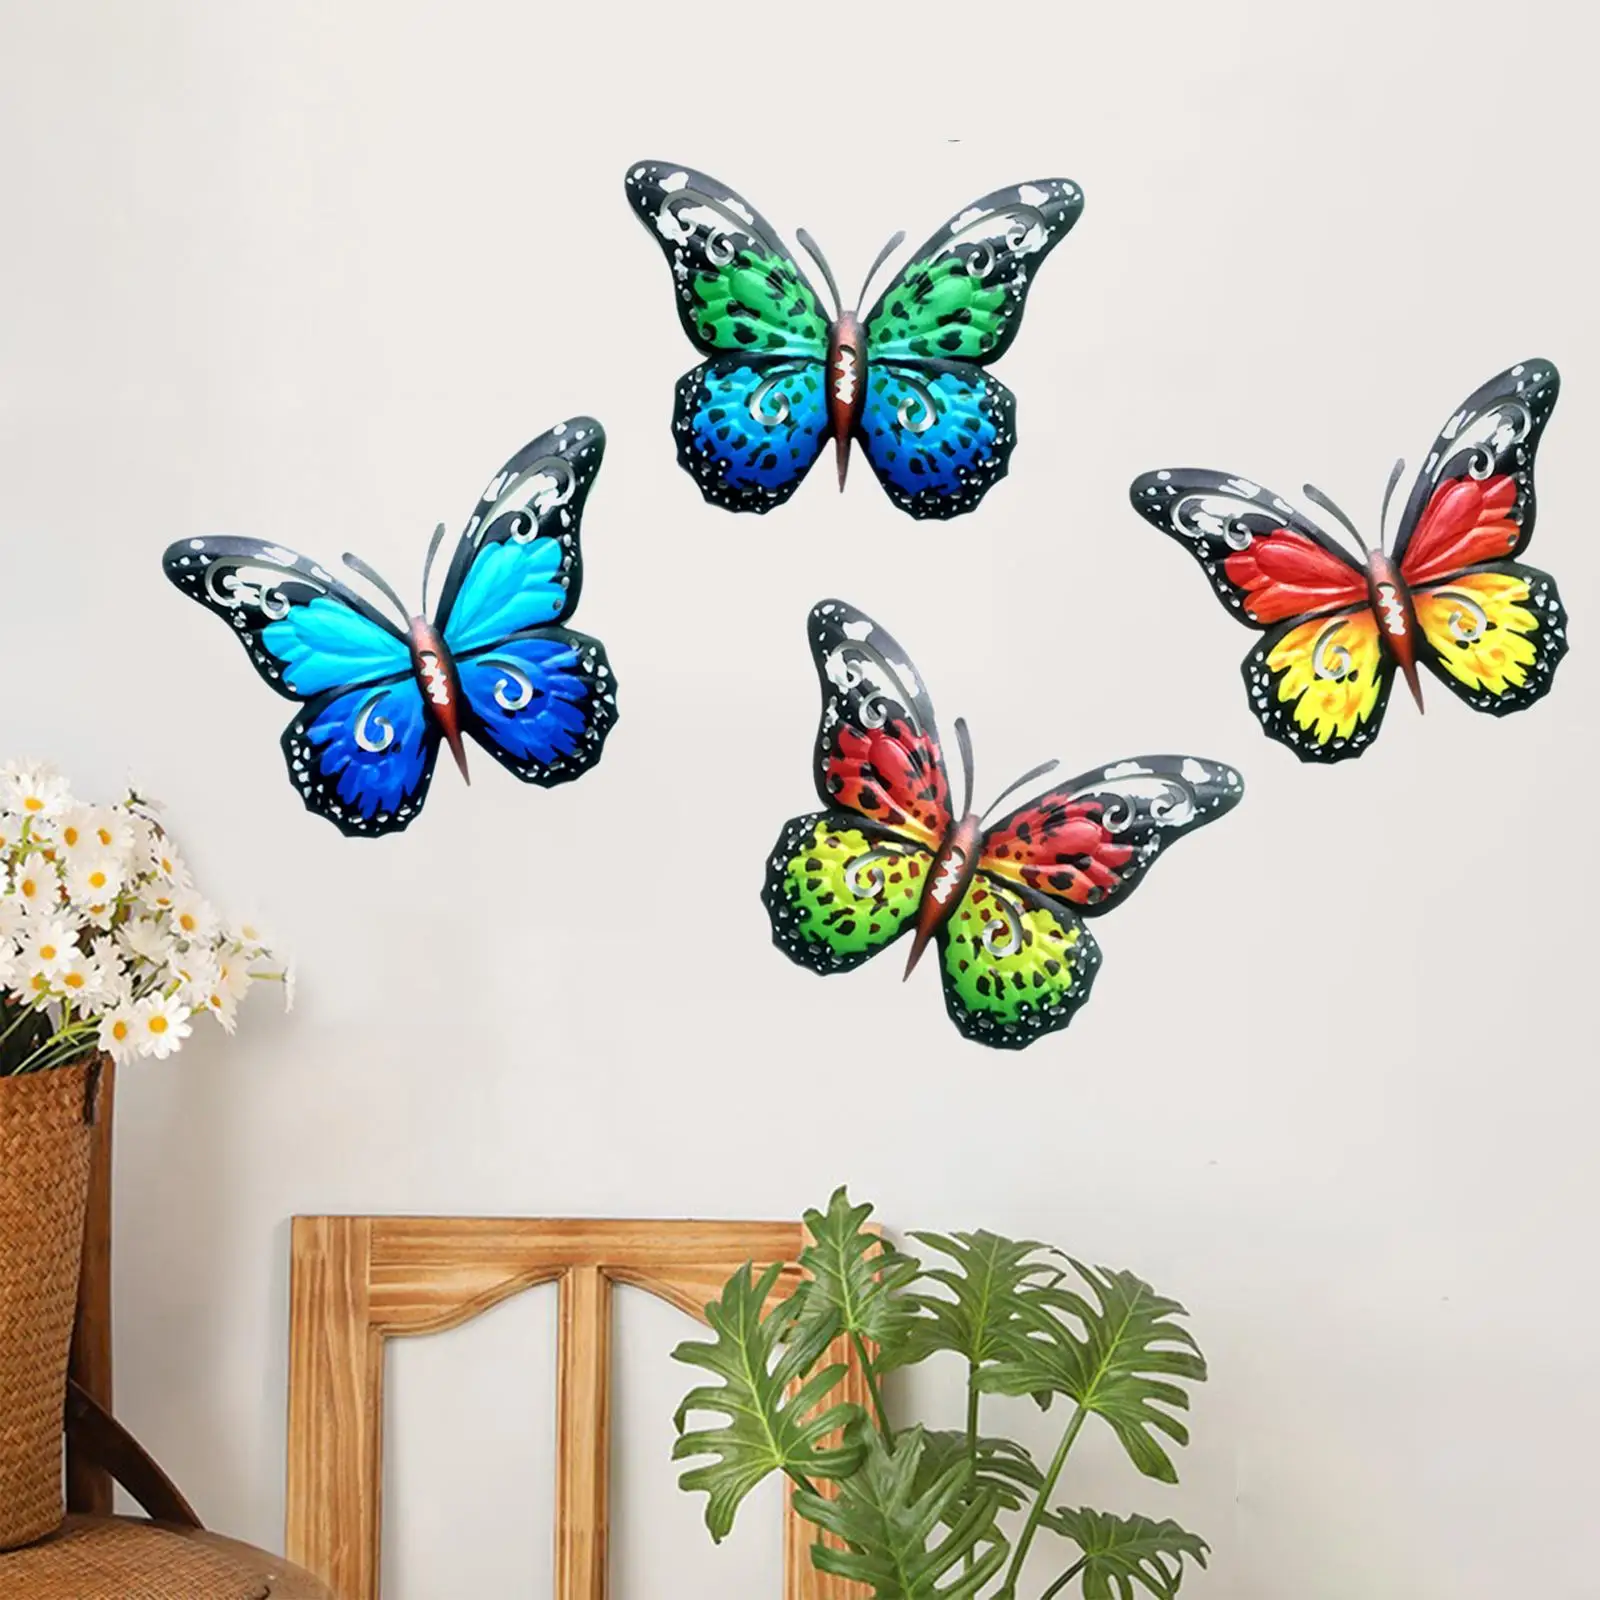 4Pcs butterfly Wall Art Hanging Butterfly Sculpture Garden Butterflies Decoration for Living Room Farmhouse Terrace Yard